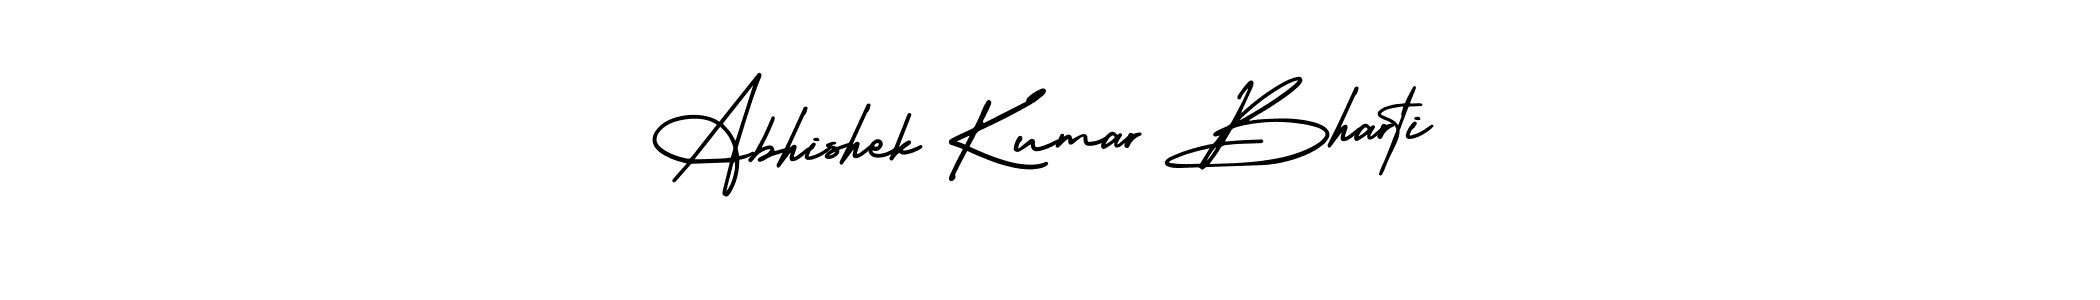 Abhishek Kumar Bharti stylish signature style. Best Handwritten Sign (AmerikaSignatureDemo-Regular) for my name. Handwritten Signature Collection Ideas for my name Abhishek Kumar Bharti. Abhishek Kumar Bharti signature style 3 images and pictures png